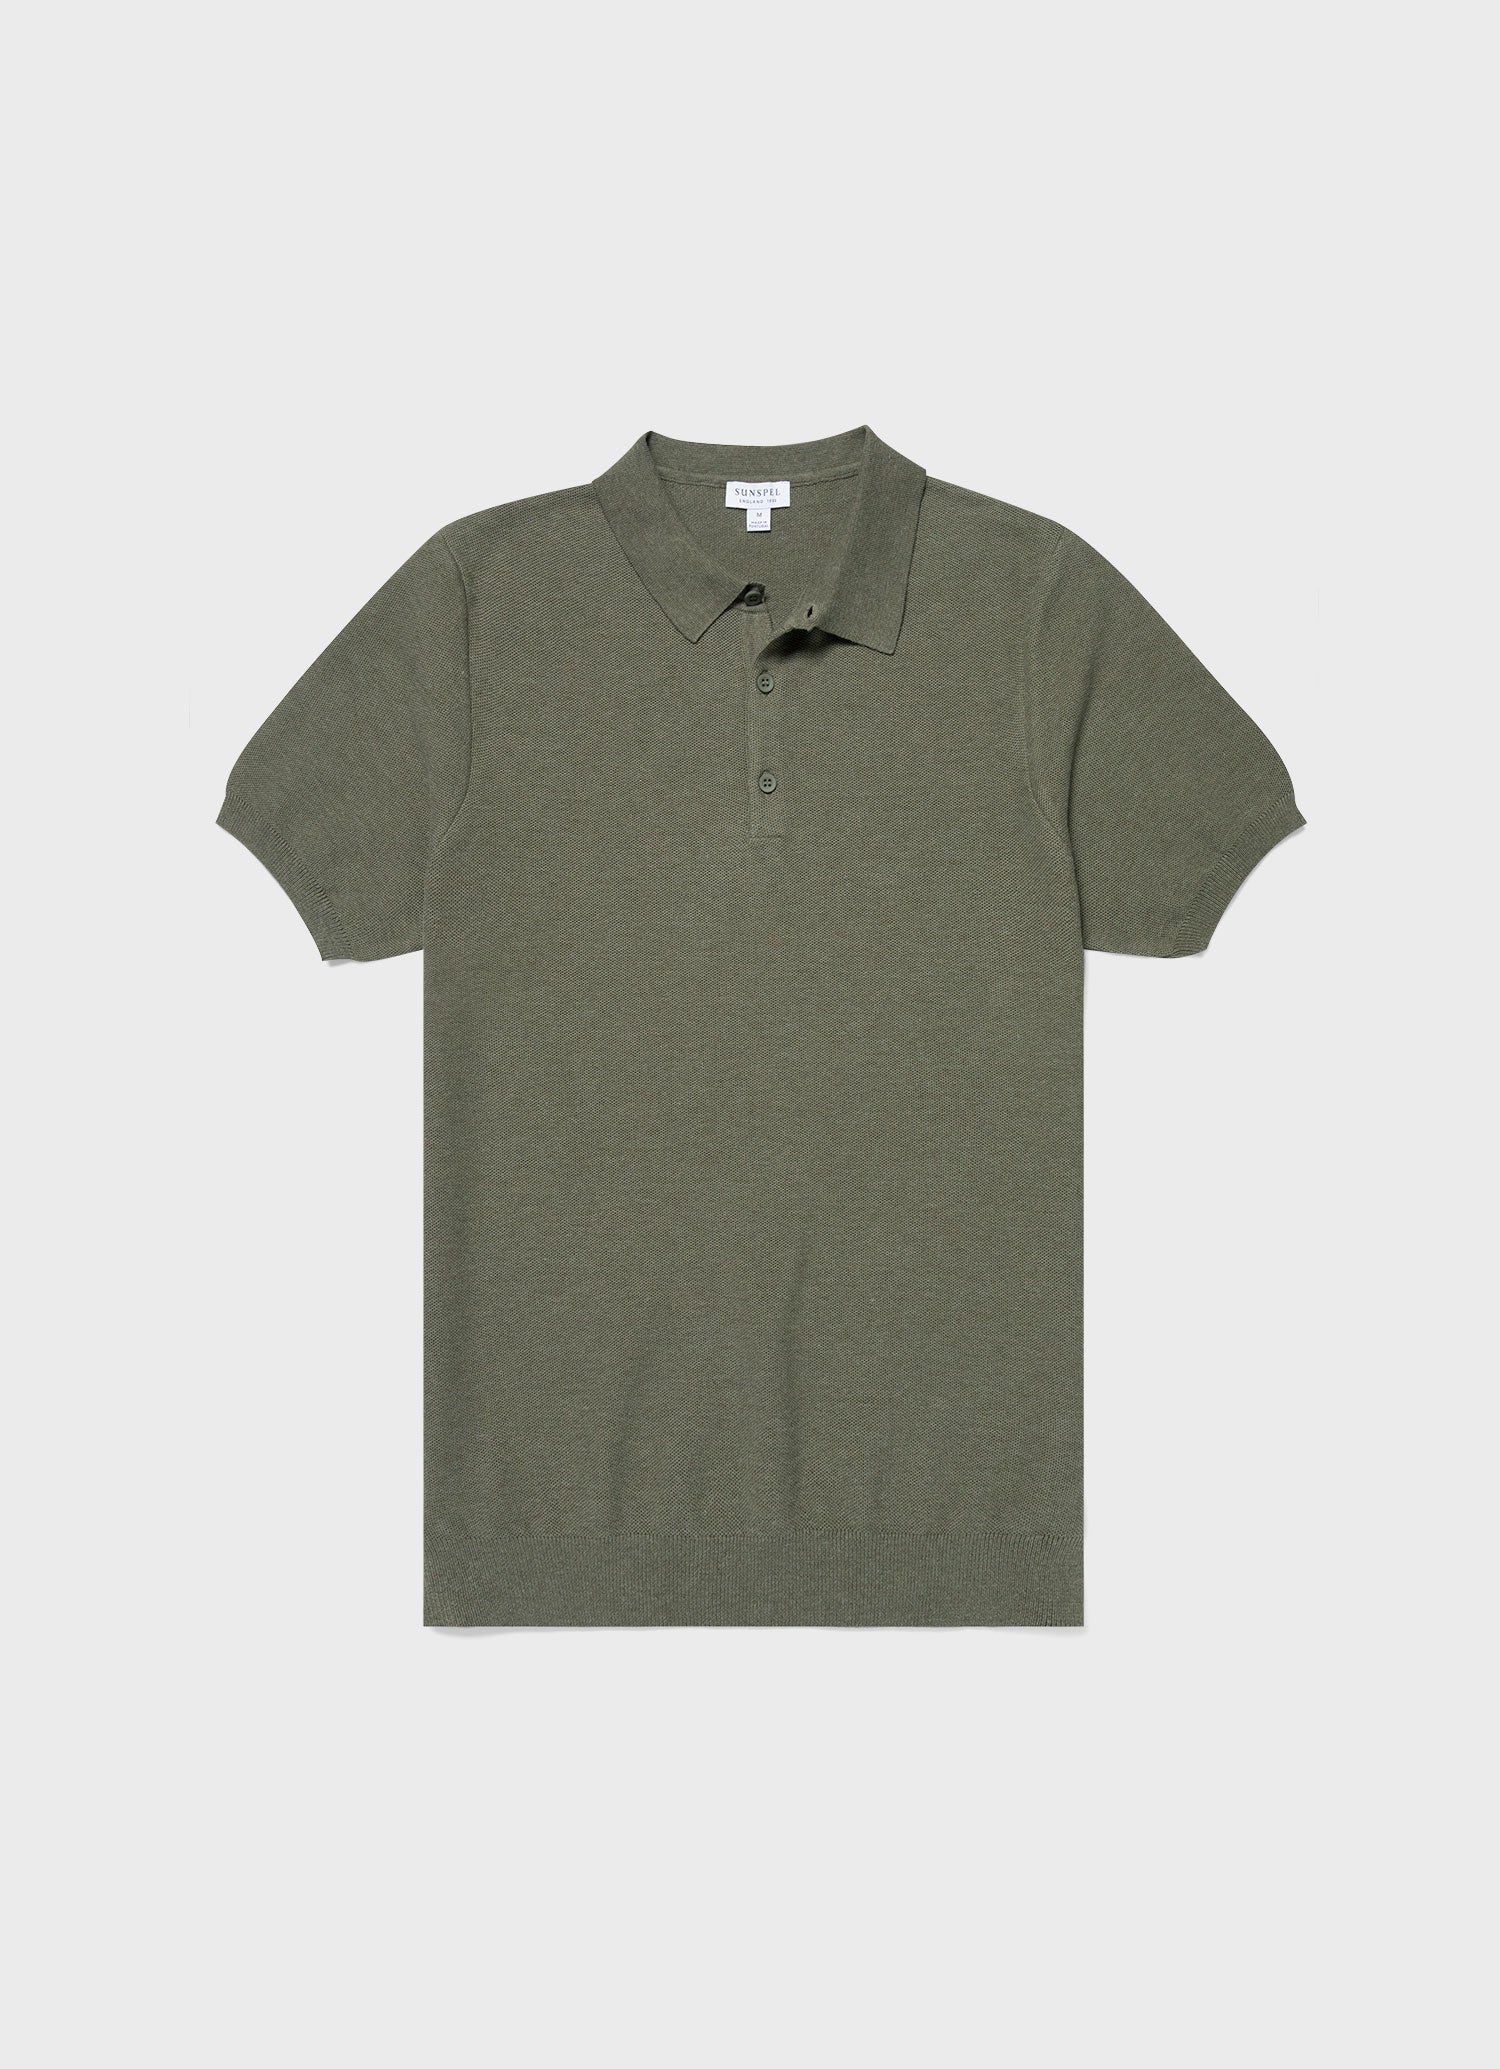 Men's Knit Polo Shirt in Pale Khaki Melange